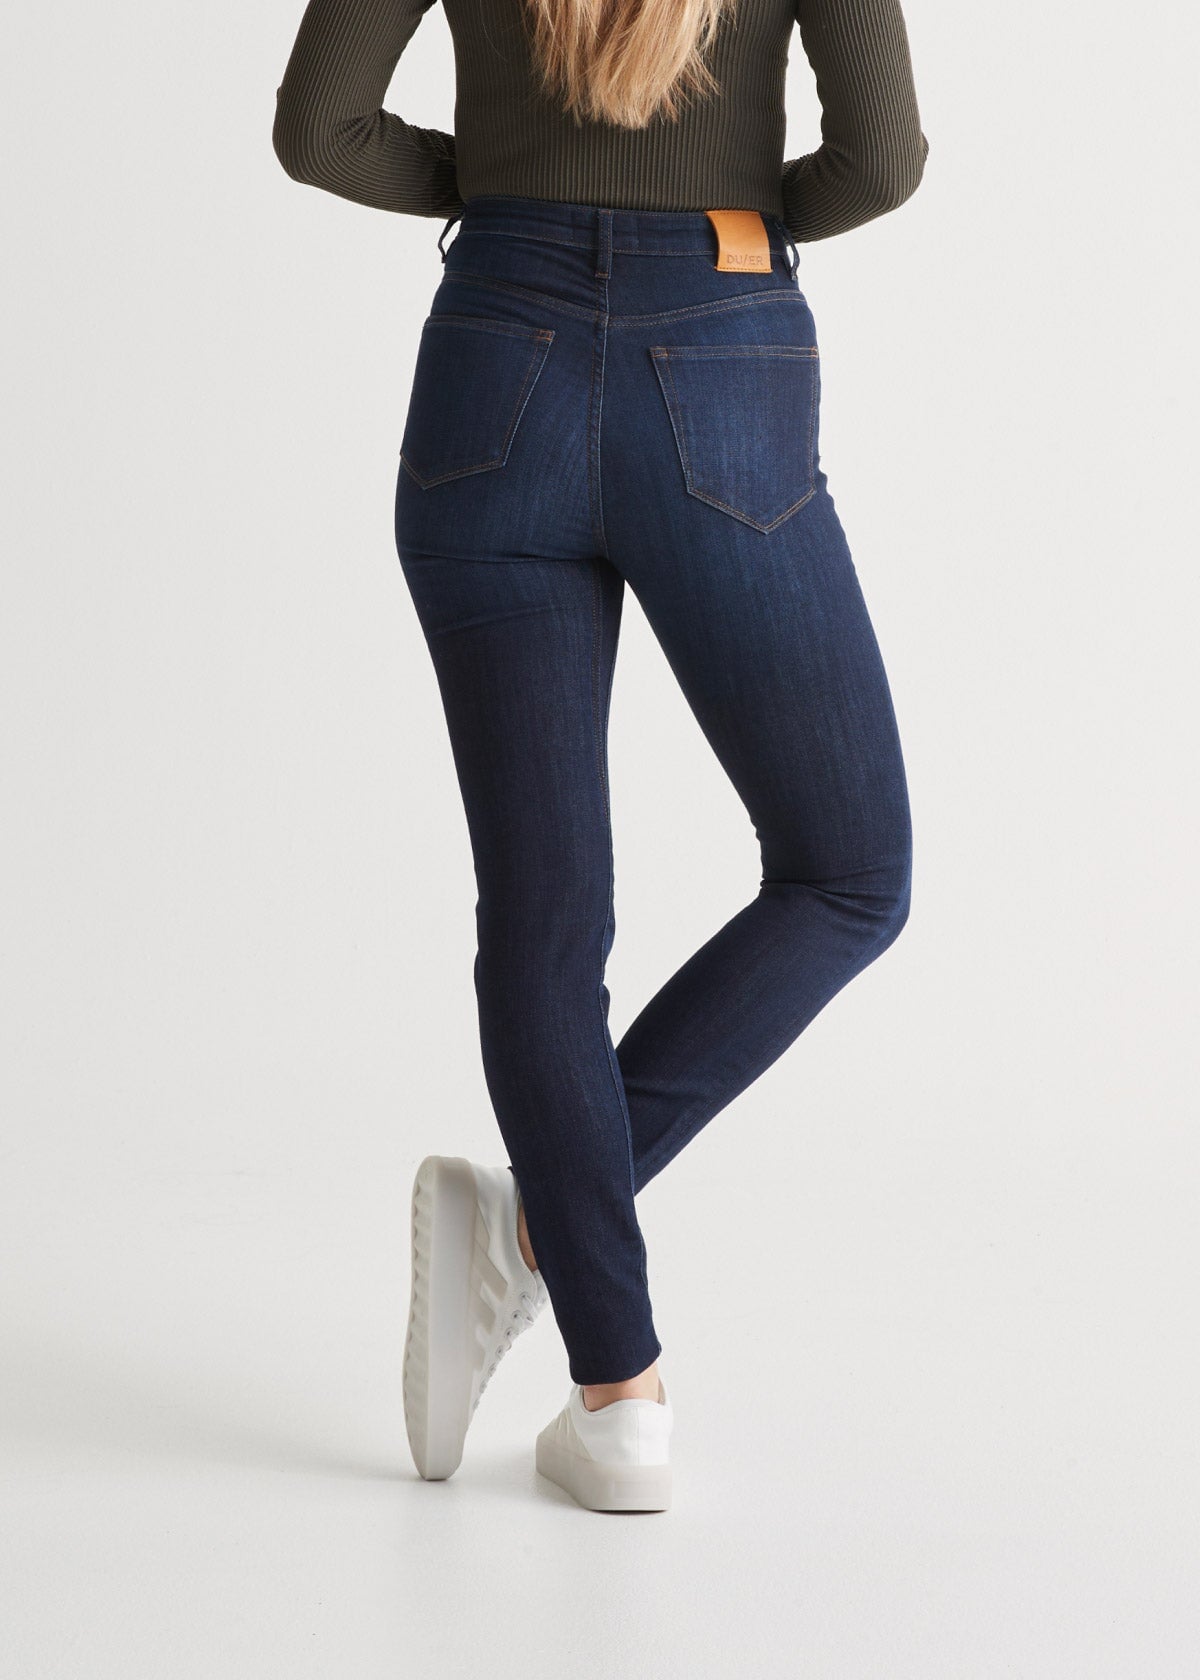 Women's High Rise Stretch Denim Skinny Jean